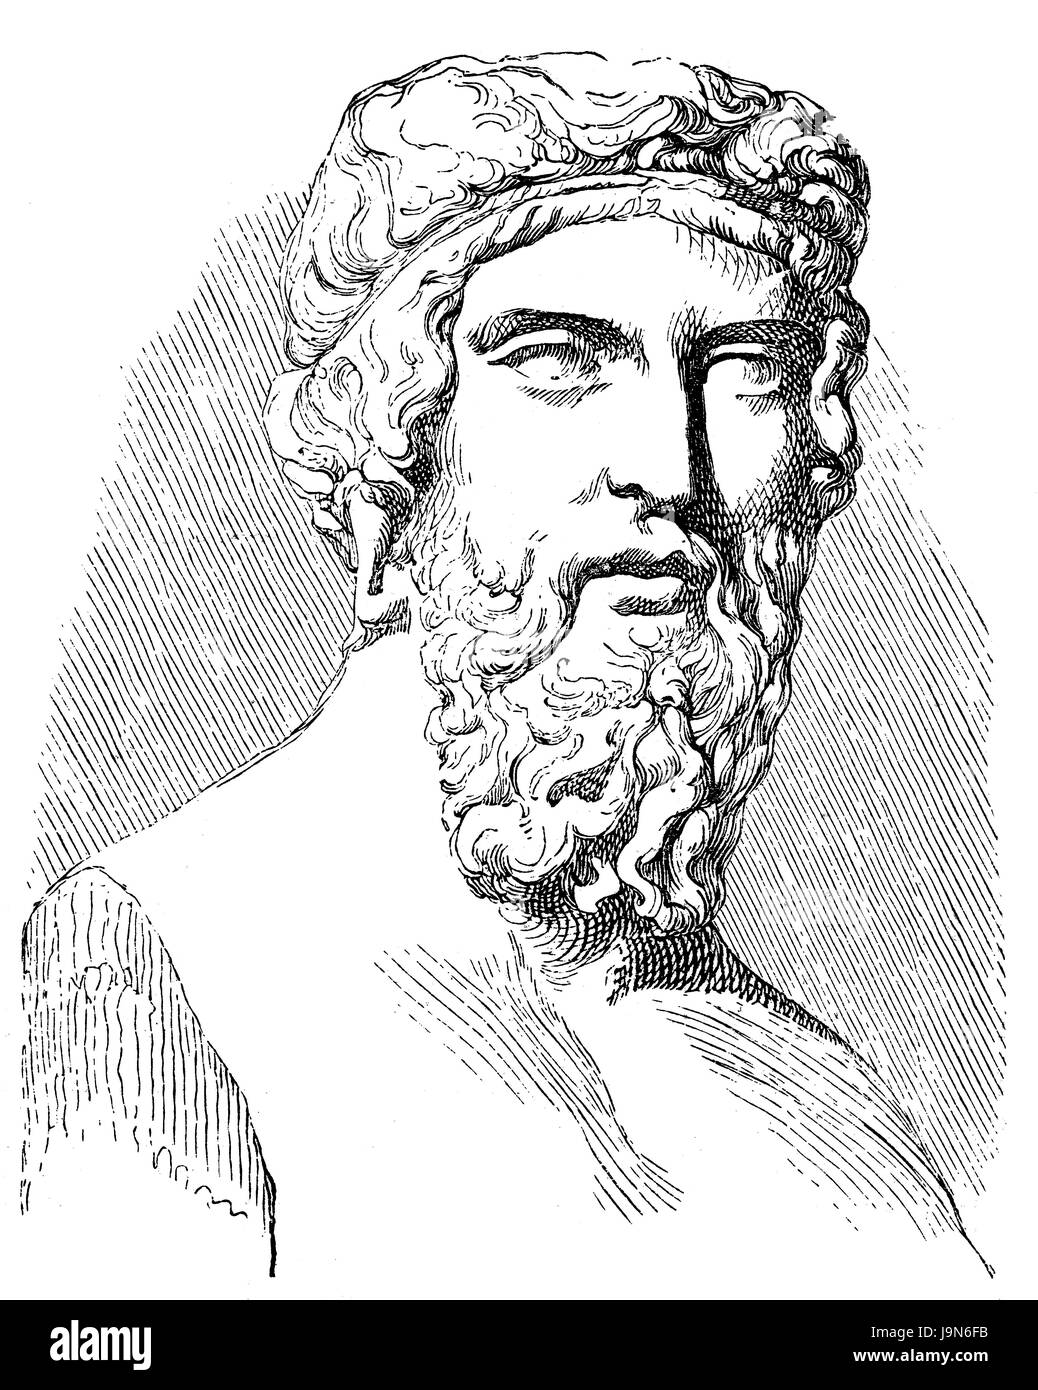 Platon ou Platon, 428 BC - 348 BC, un ancien philosophe grec Banque D'Images